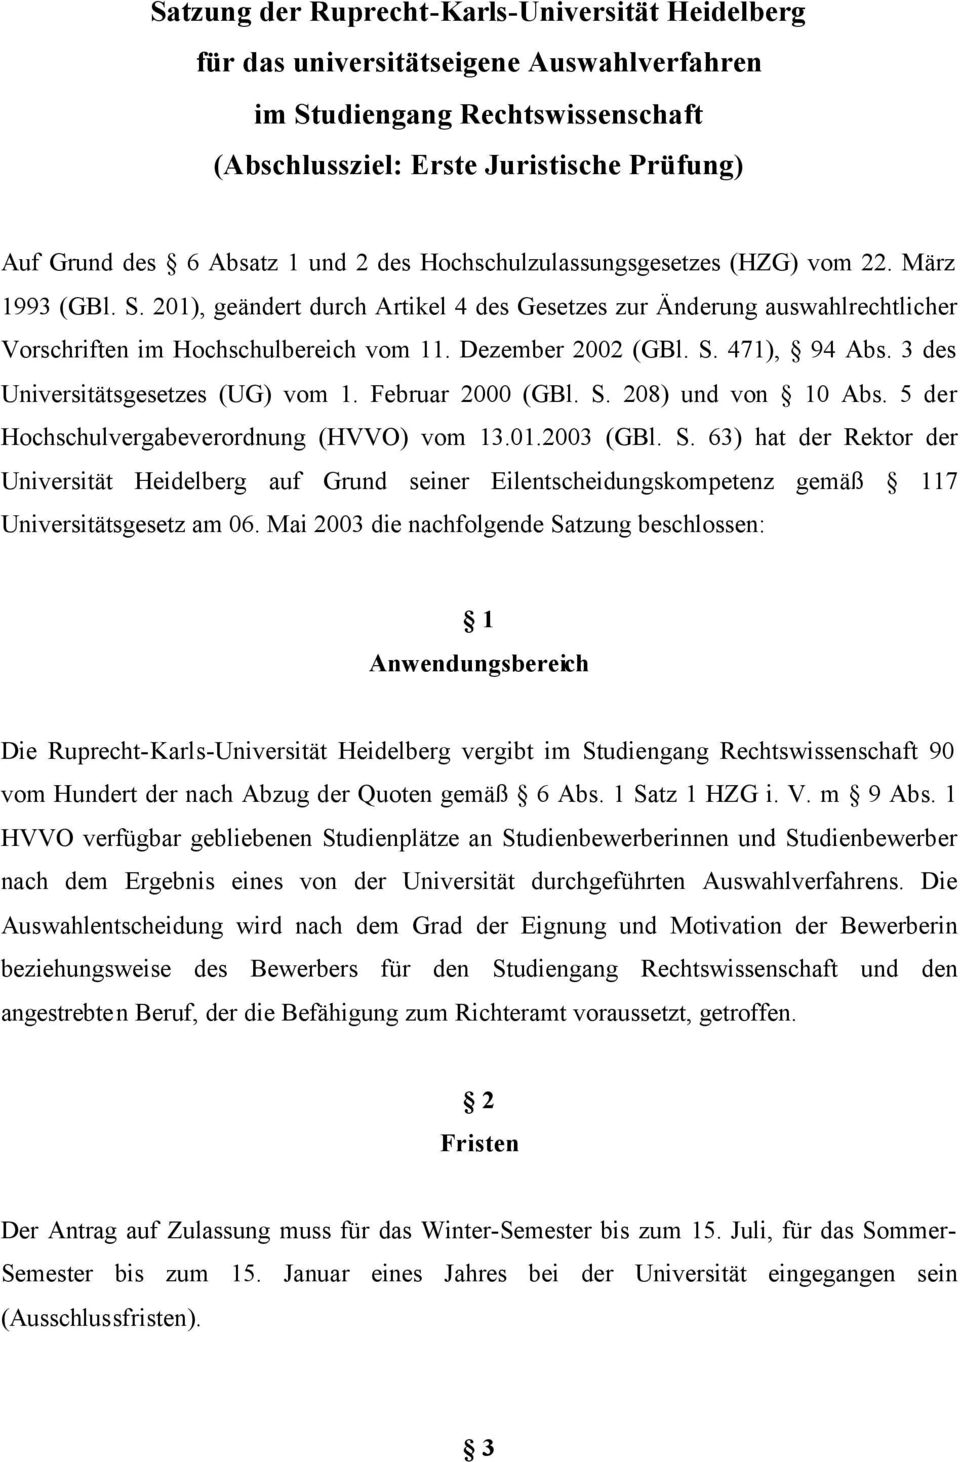 Dezember 2002 (GBl. S. 471), 94 Abs. 3 des Universitätsgesetzes (UG) vom 1. Februar 2000 (GBl. S. 208) und von 10 Abs. 5 der Hochschulvergabeverordnung (HVVO) vom 13.01.2003 (GBl. S. 63) hat der Rektor der Universität Heidelberg auf Grund seiner Eilentscheidungskompetenz gemäß 117 Universitätsgesetz am 06.